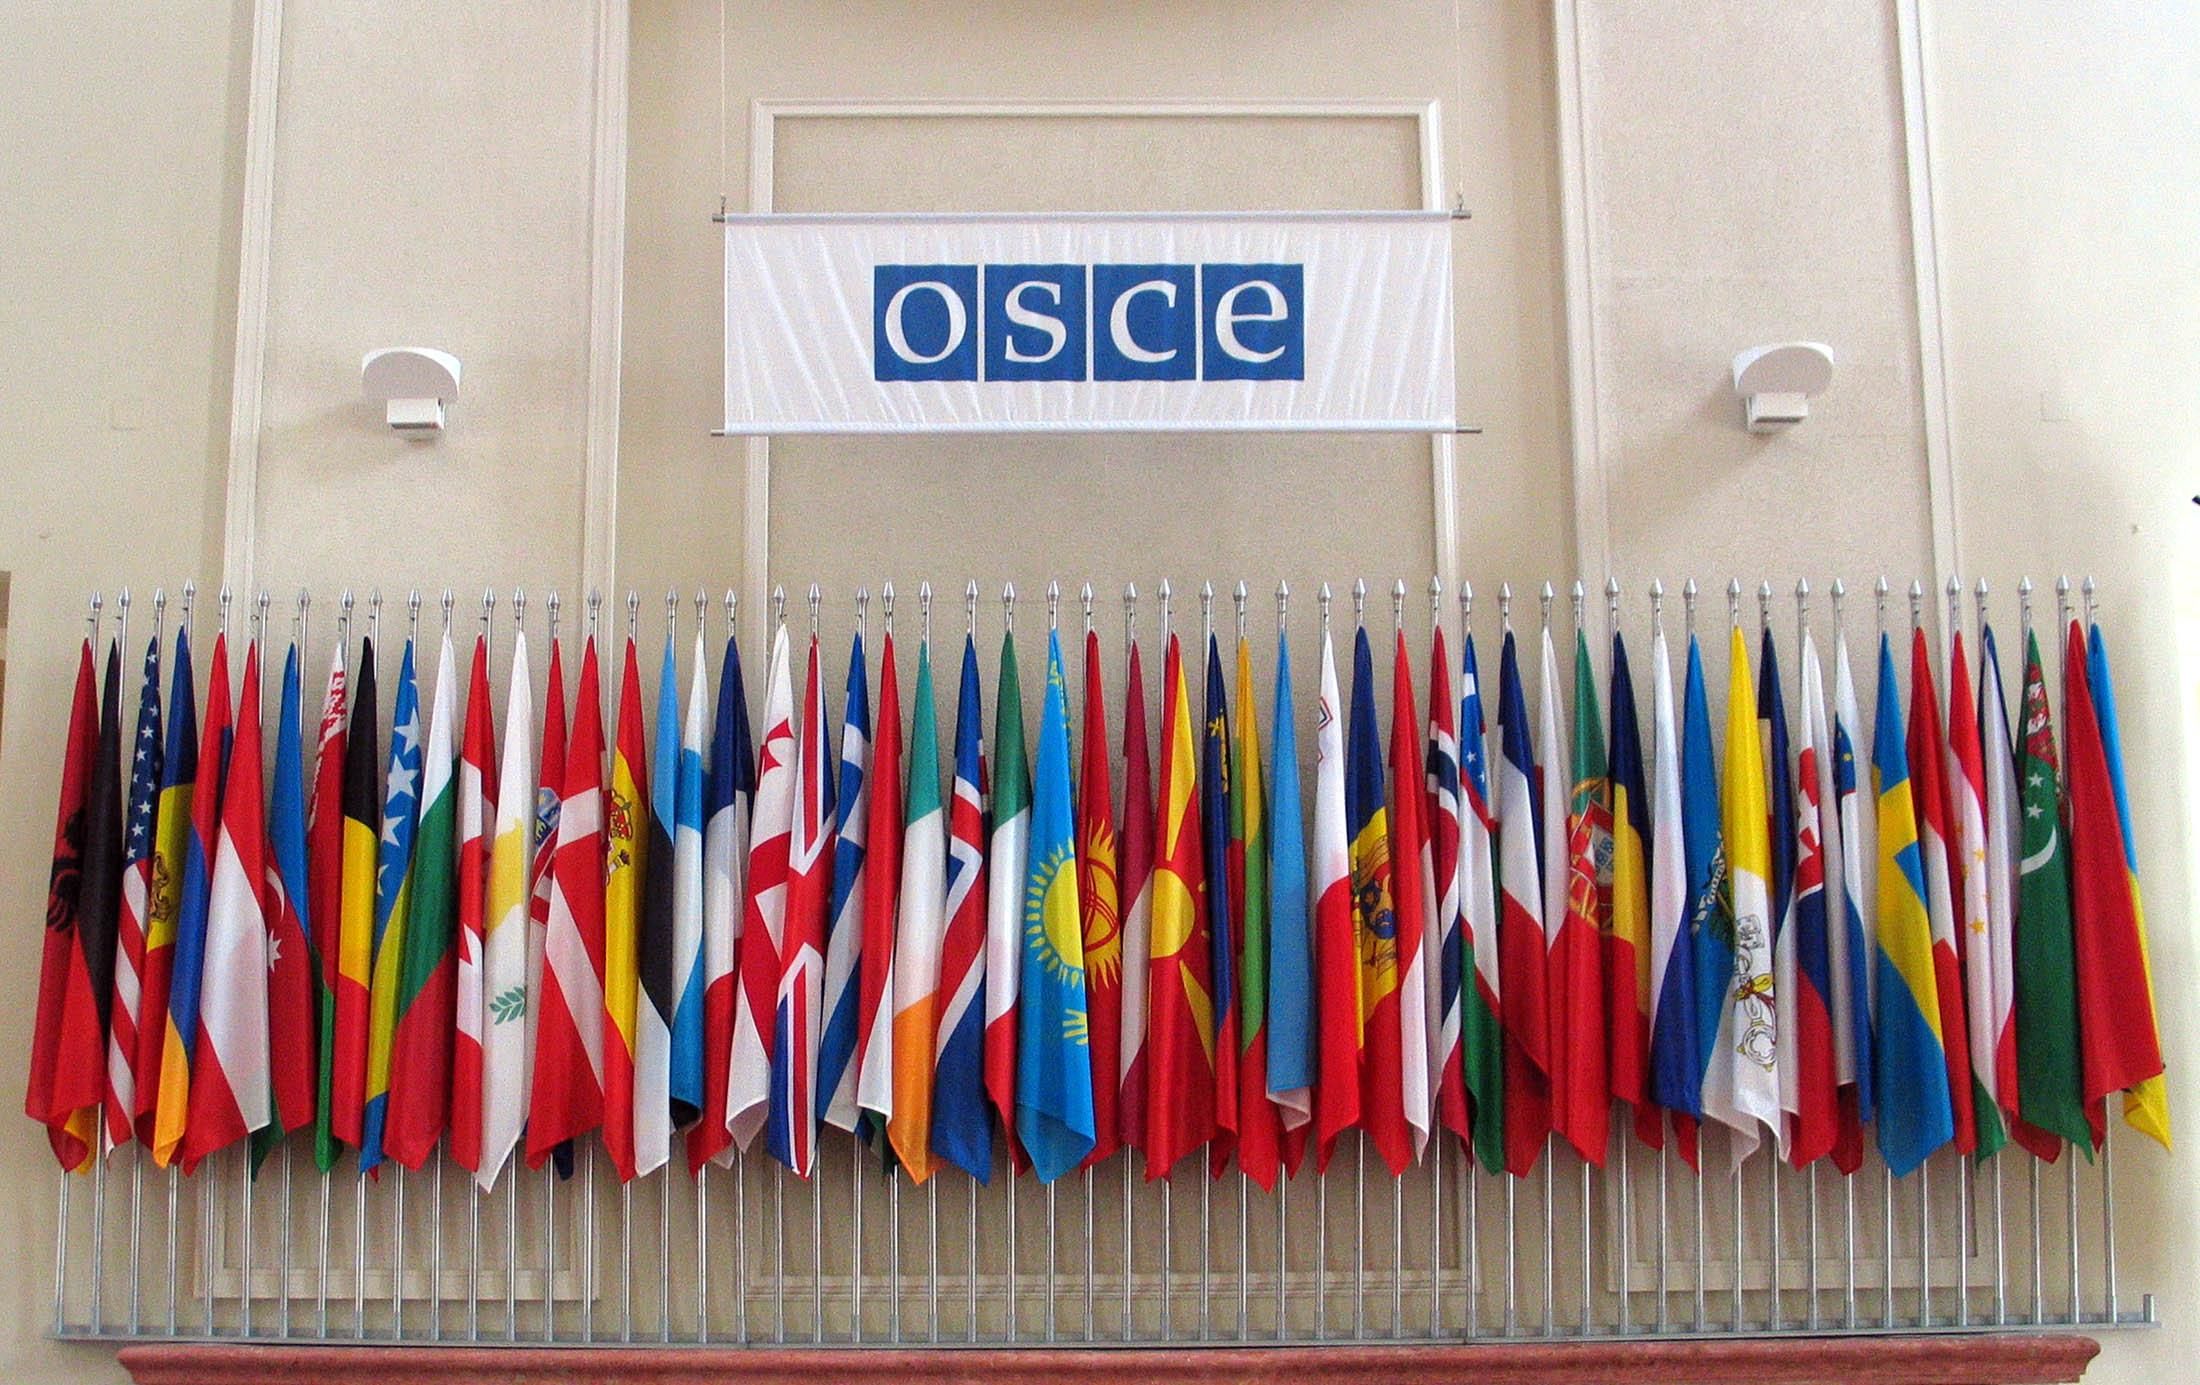 ОБСЕ приняла резолюцию относительно Крыма, несмотря на яростное сопротивление россиян